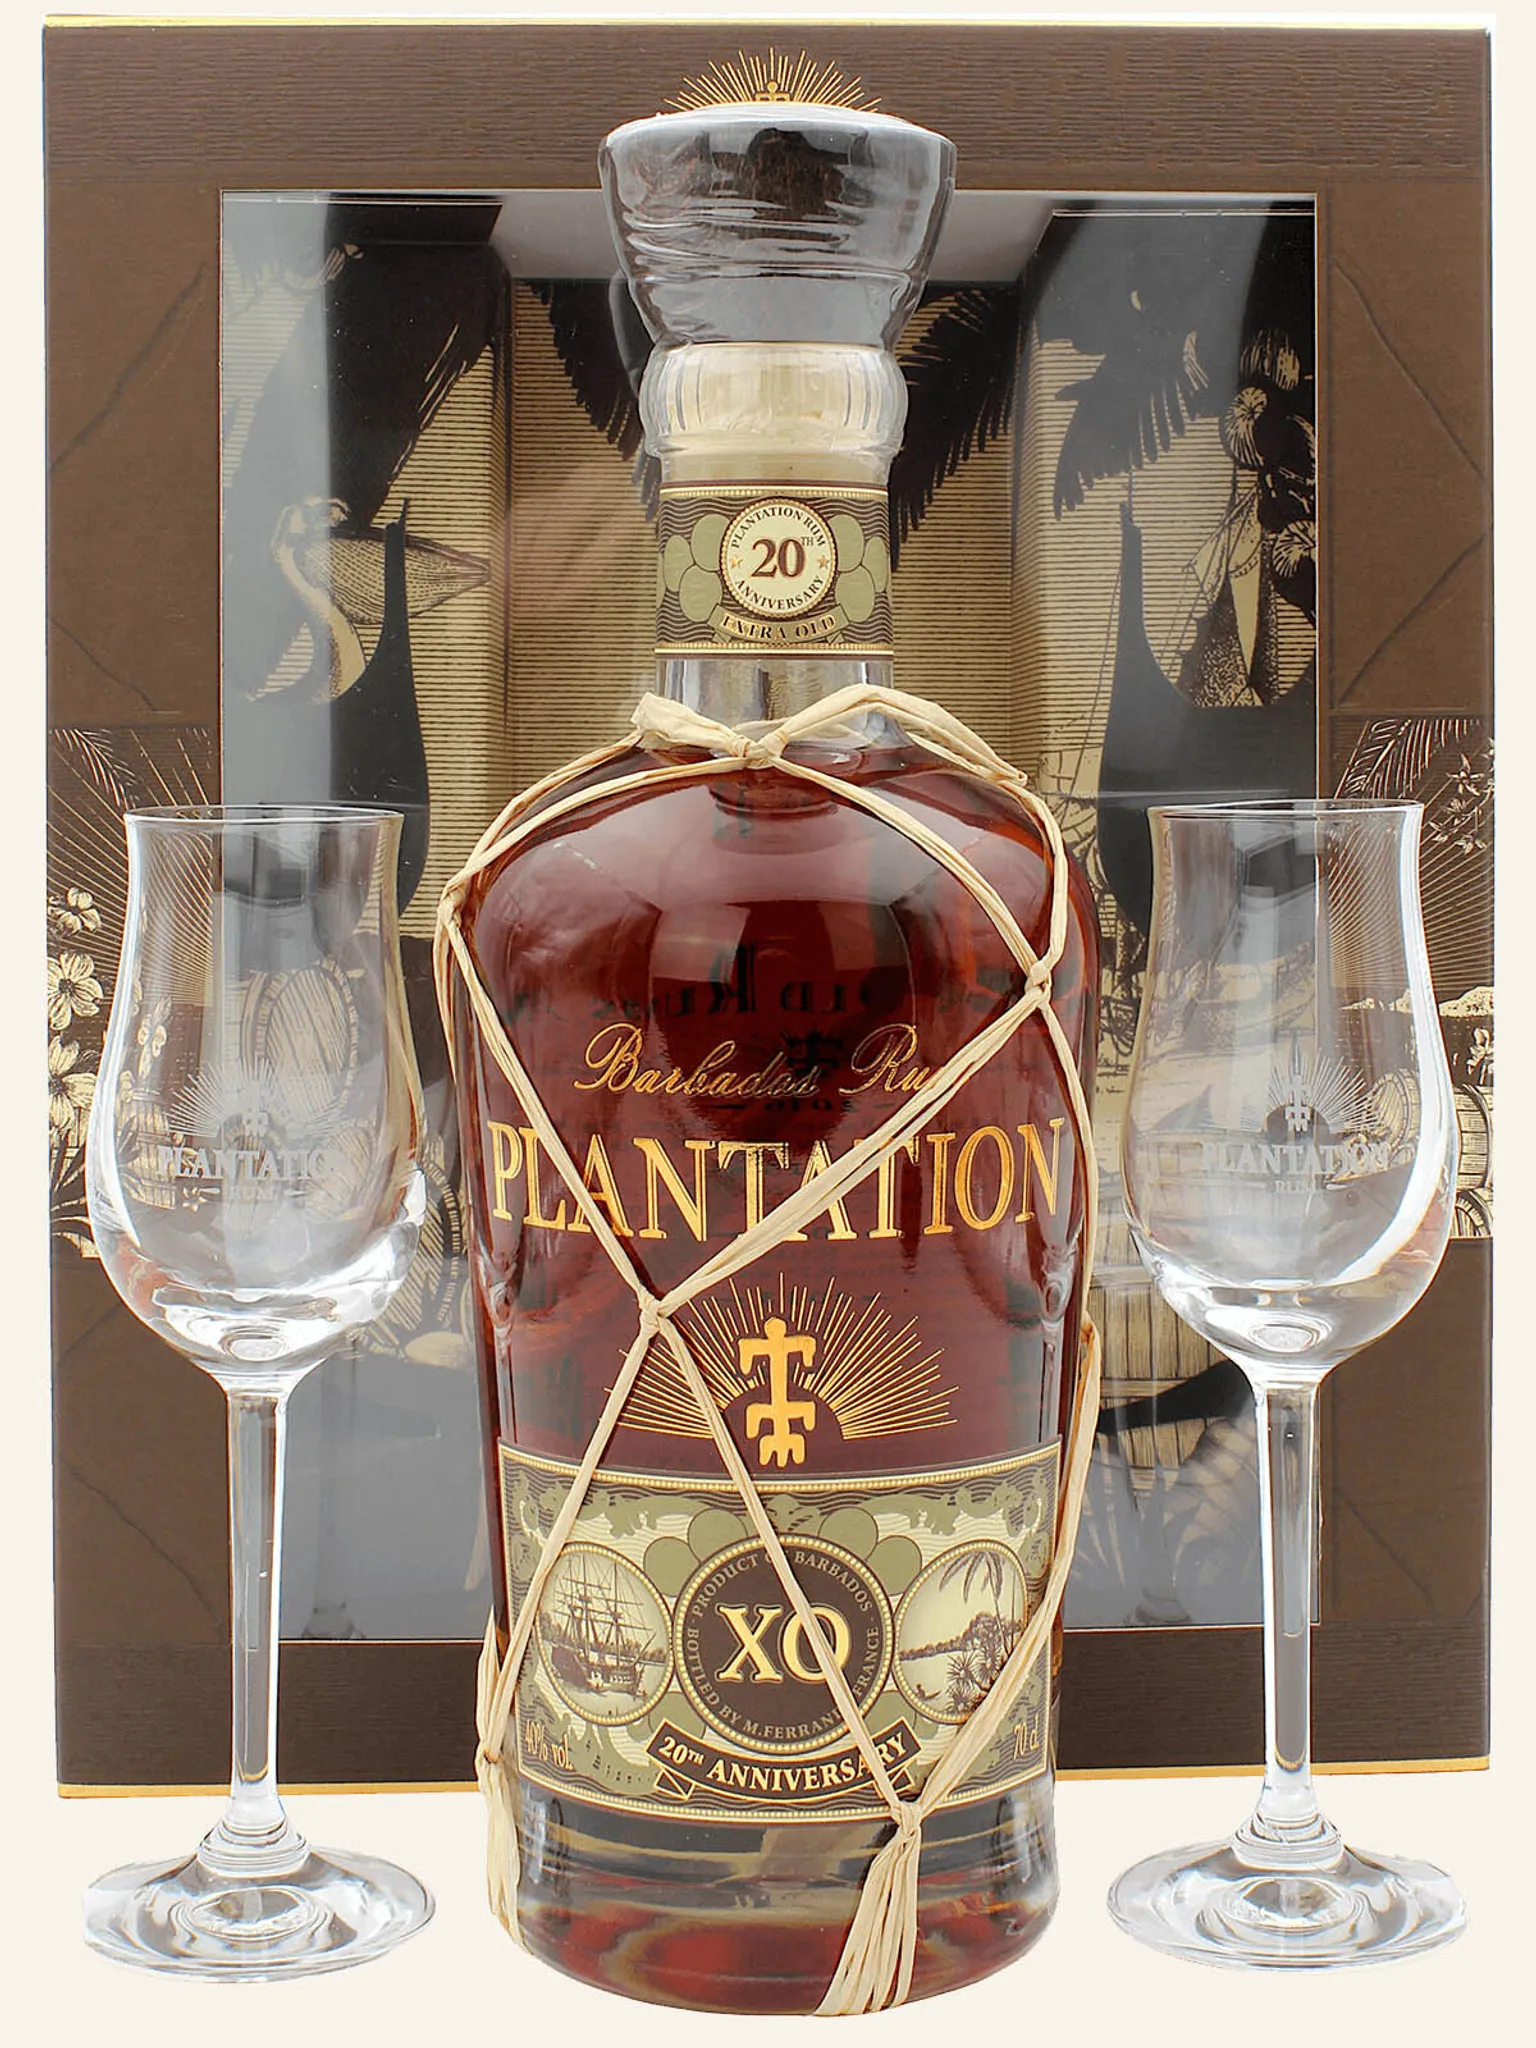 Extra Plantation Gläsern mit Rum Old Barbados